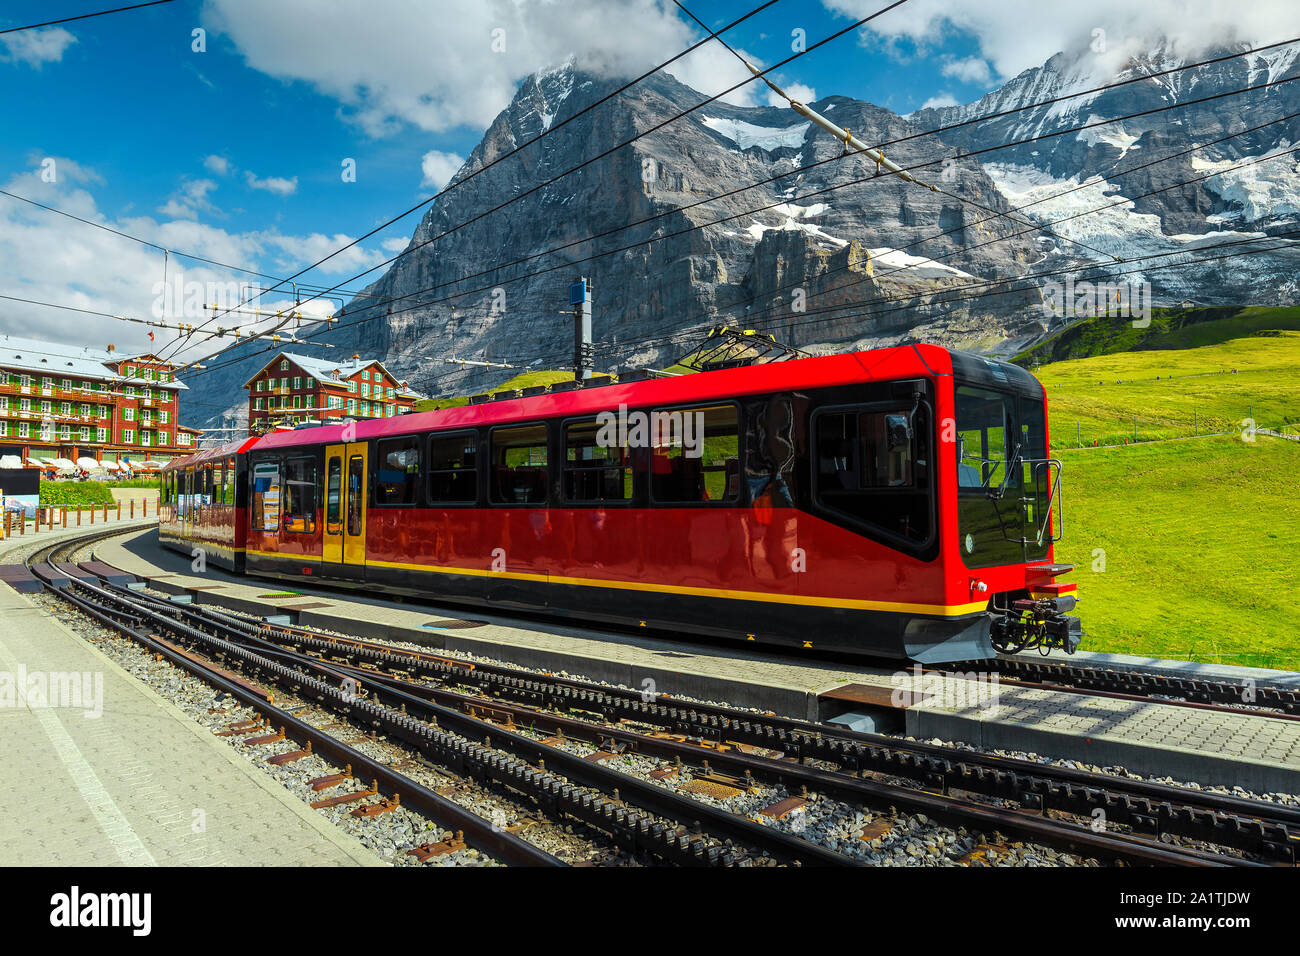 Berühmte Schweizer Ausflugsziel. Spektakuläre Reise und touristischer Ort mit hohen Bergen und atemberaubenden Blick. Moderne elektrische rote Bummelzug in Stockfoto